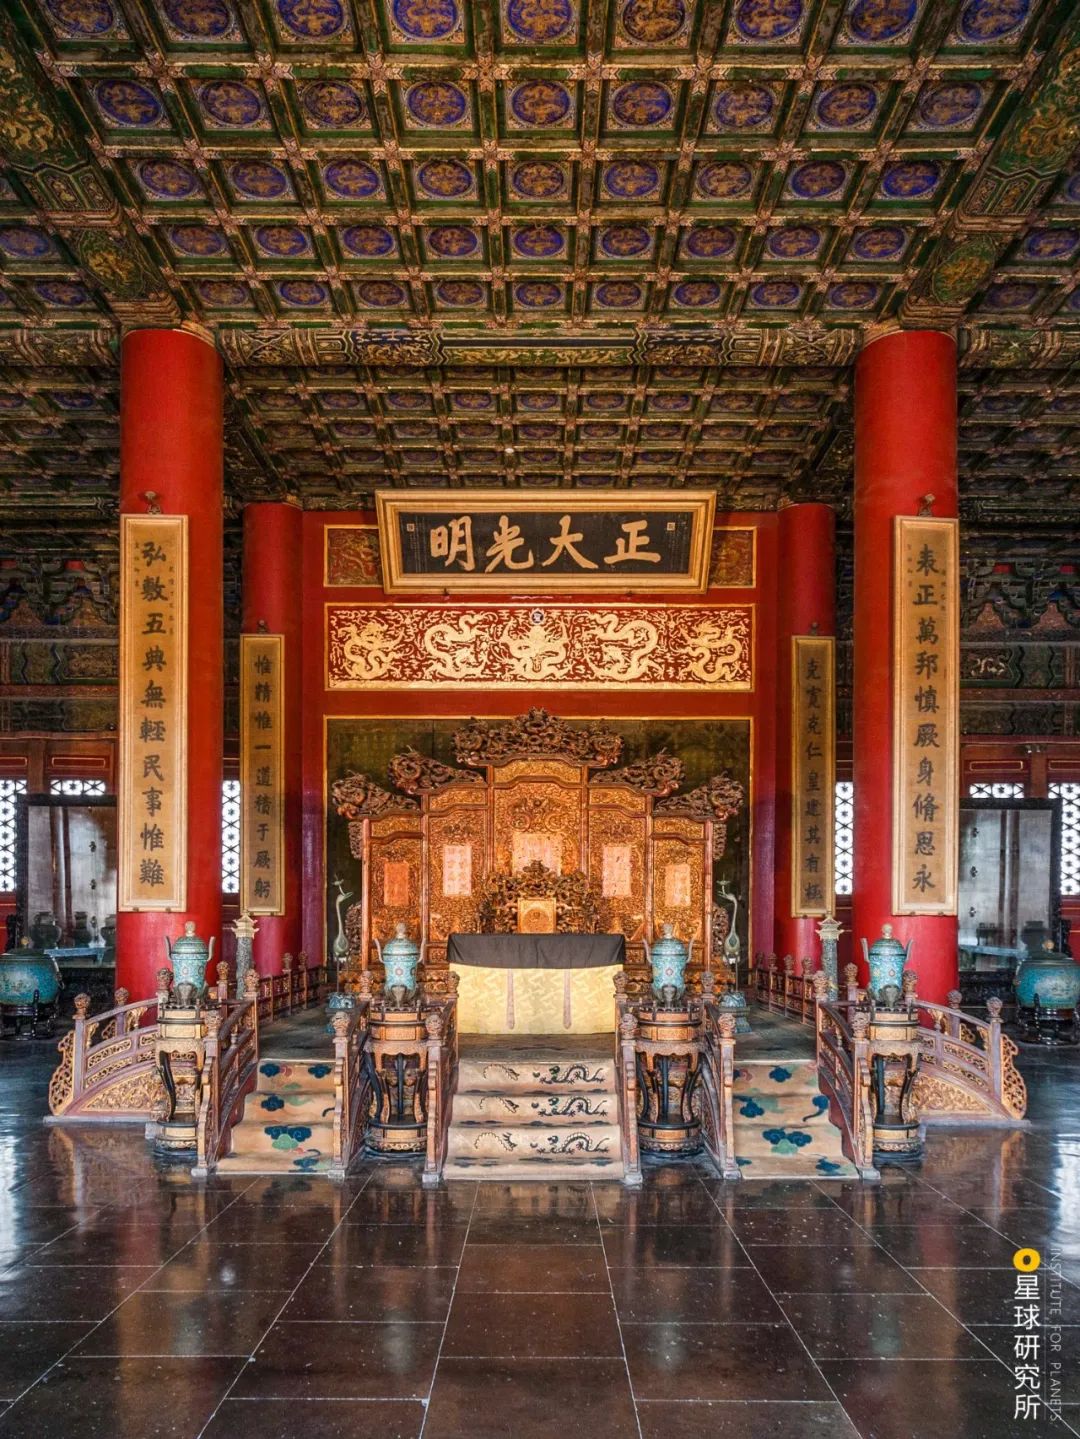 乾清宫 - 故宫博物院